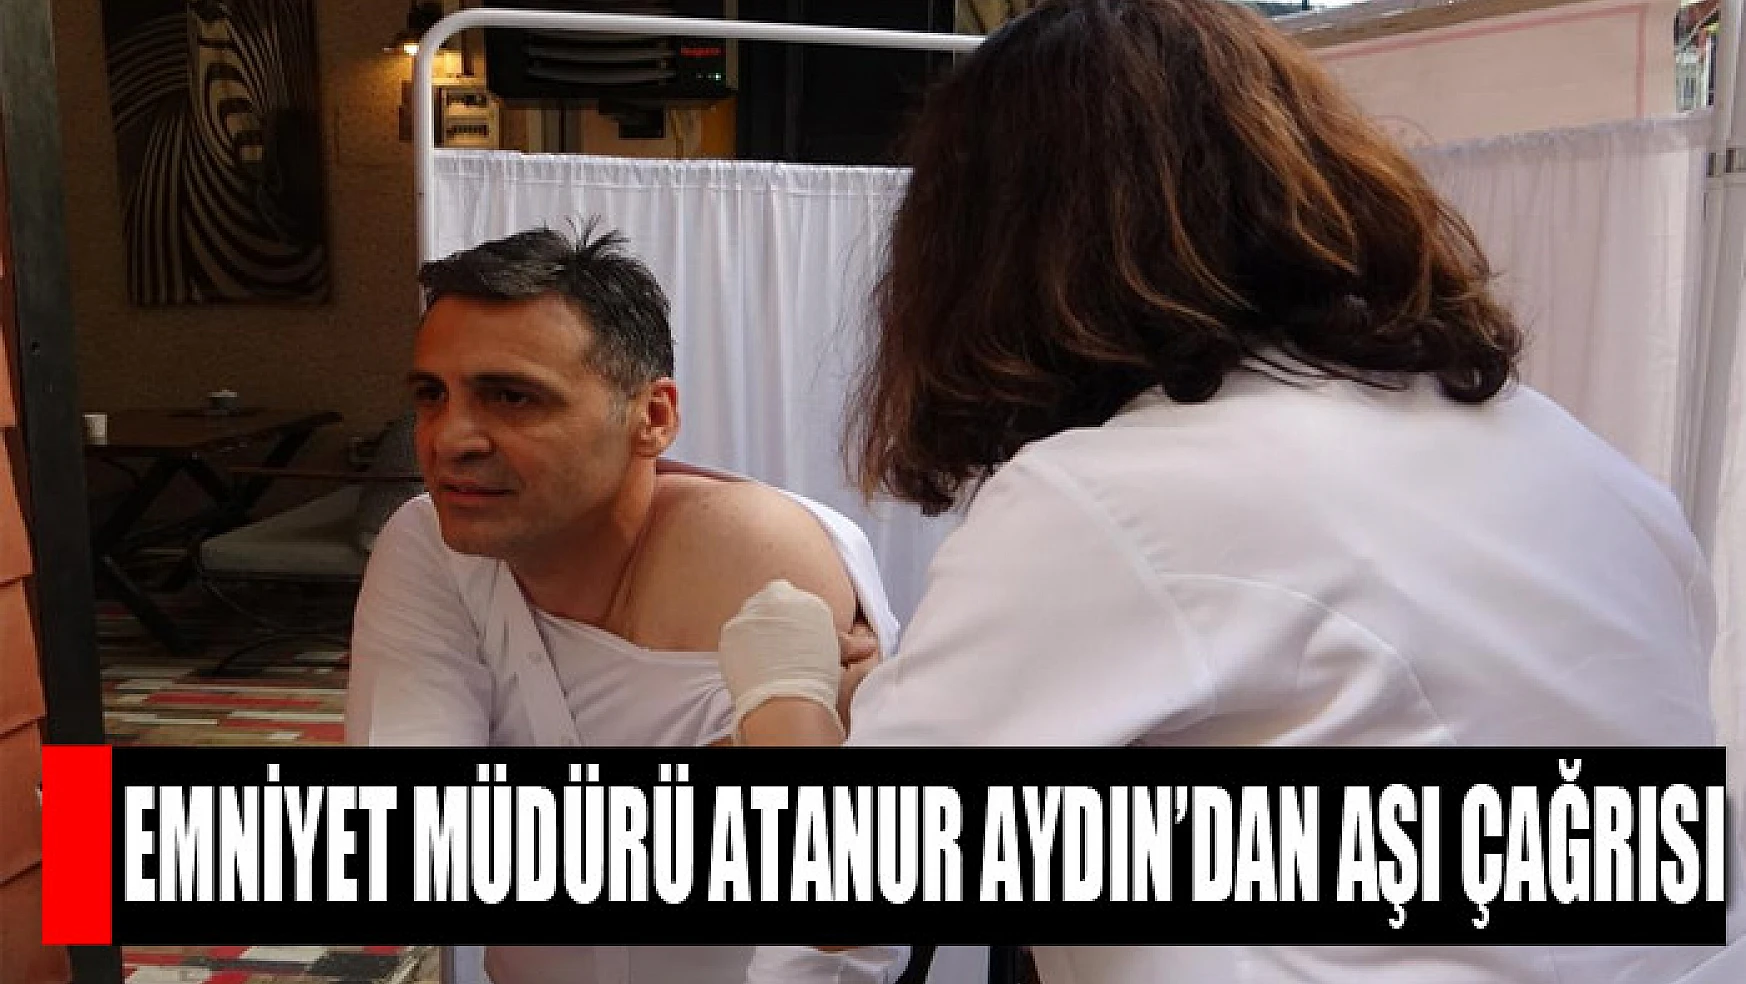 Emniyet Müdürü Atanur Aydın'dan aşı çağrısı